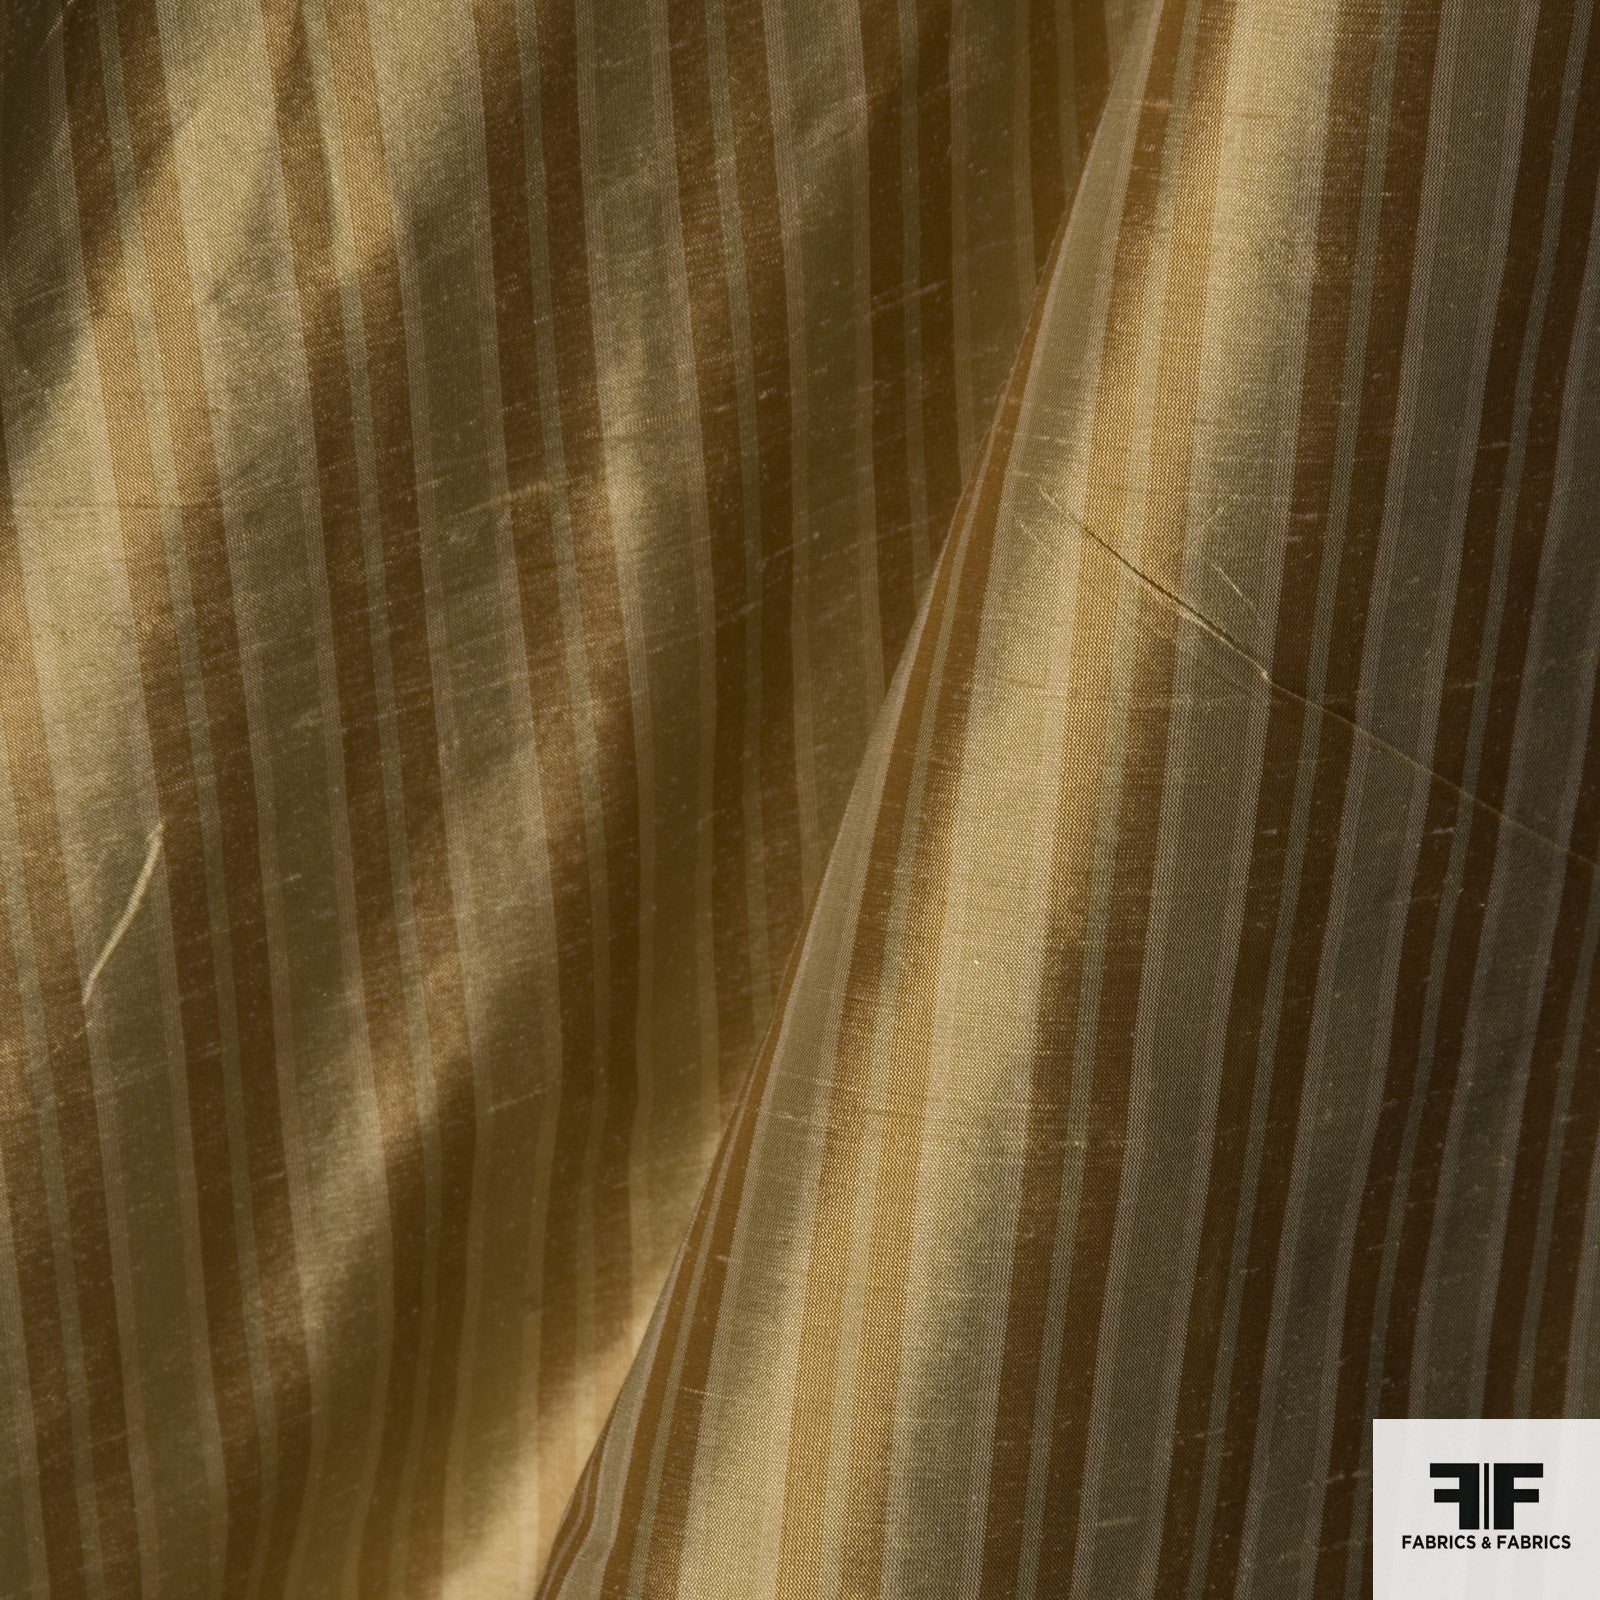 Yard Died Silk Striped - Taupe/Orange